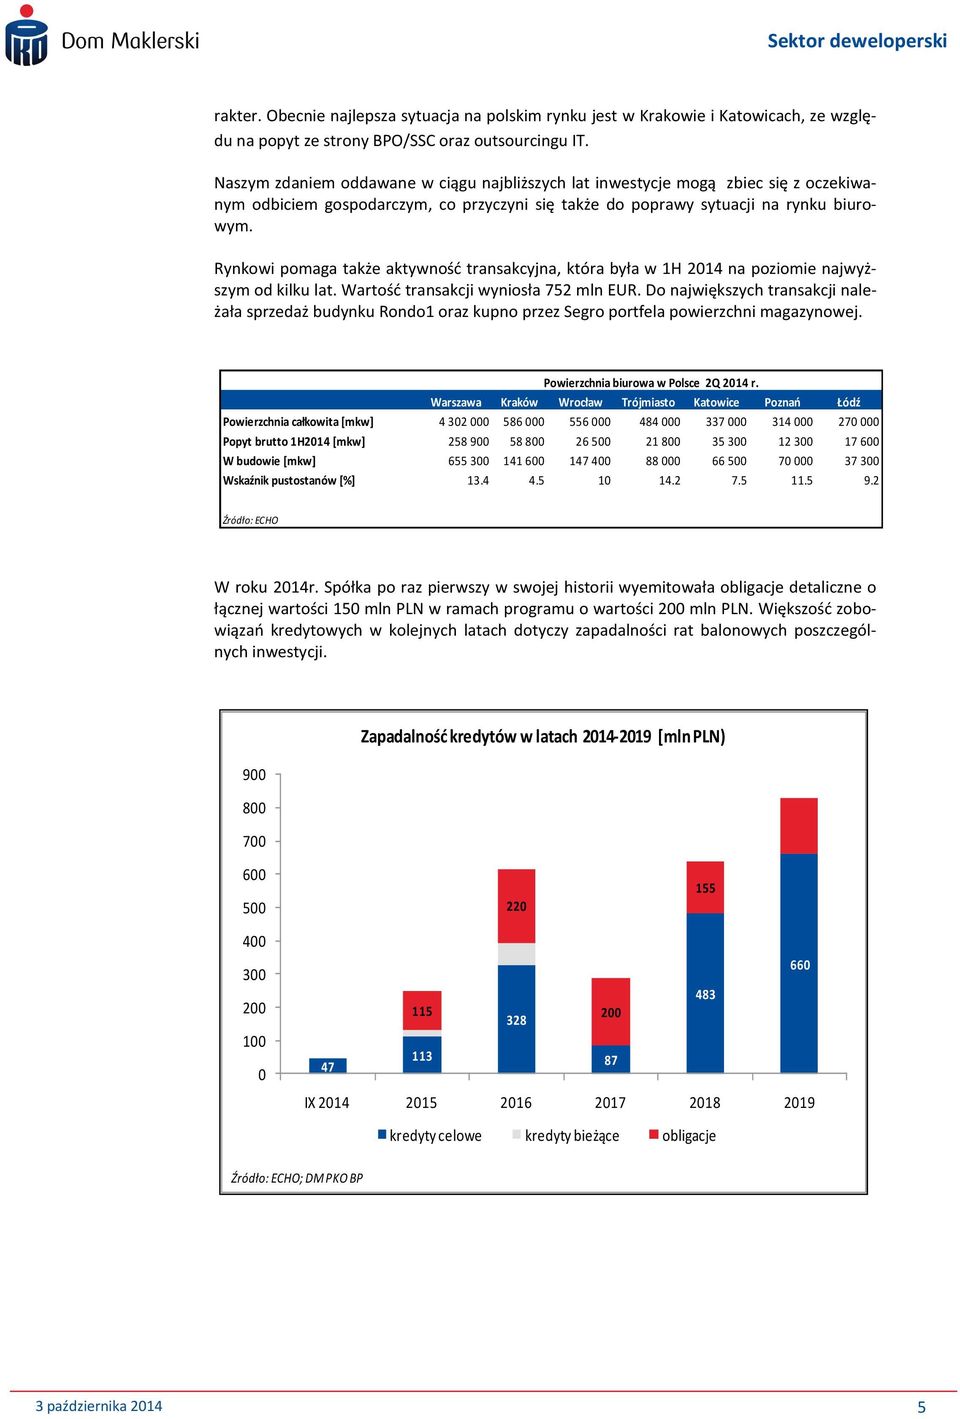 Rynkowi pomaga także aktywnośd transakcyjna, która była w 1H 2014 na poziomie najwyższym od kilku lat. Wartośd transakcji wyniosła 752 mln EUR.